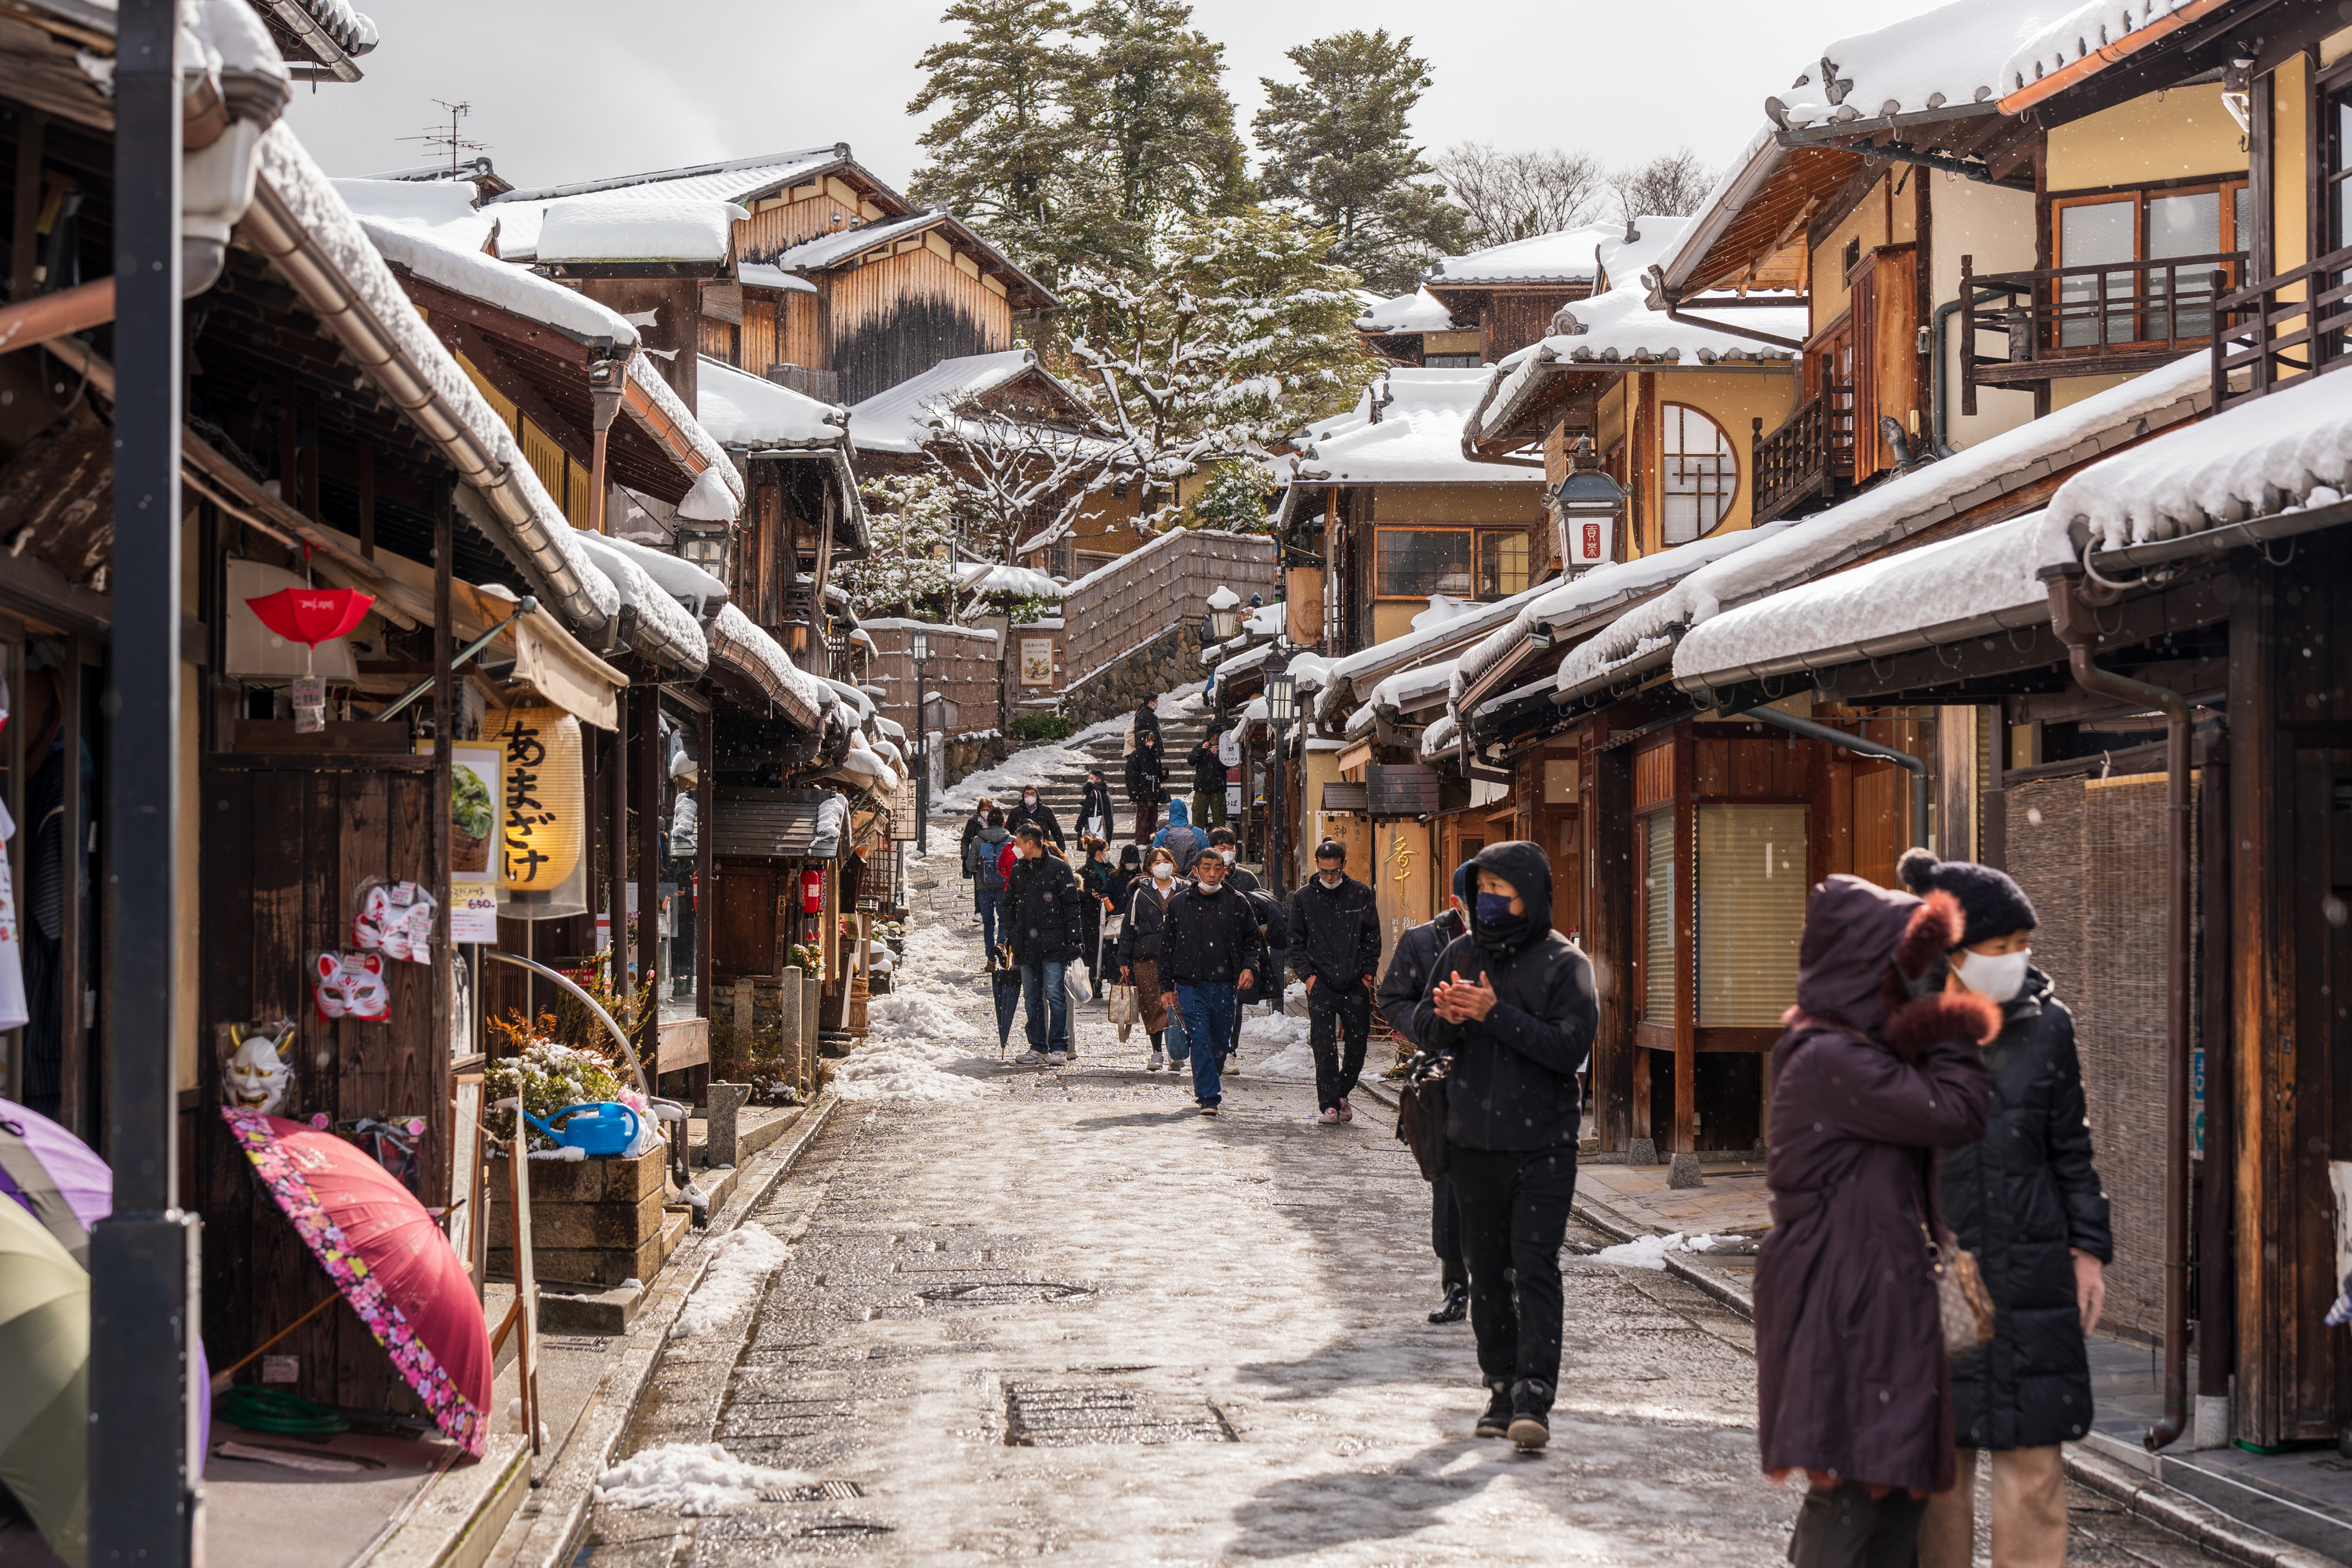 Snowy winter street with people walking